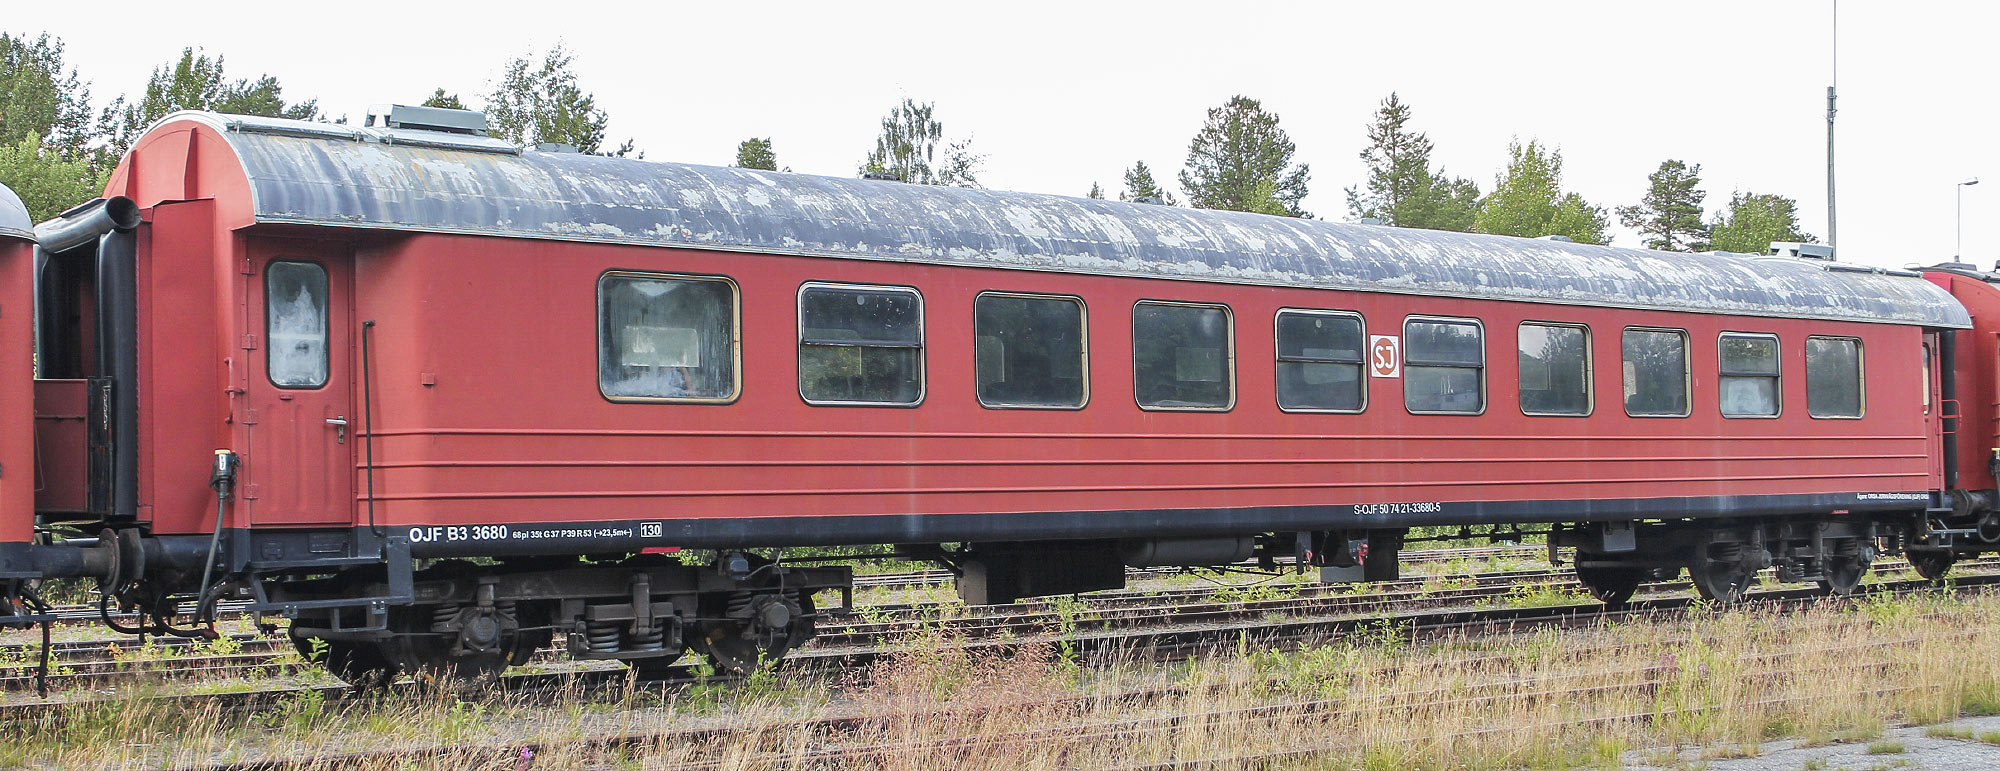 B3 3680 som museivagn i Storuman 2021